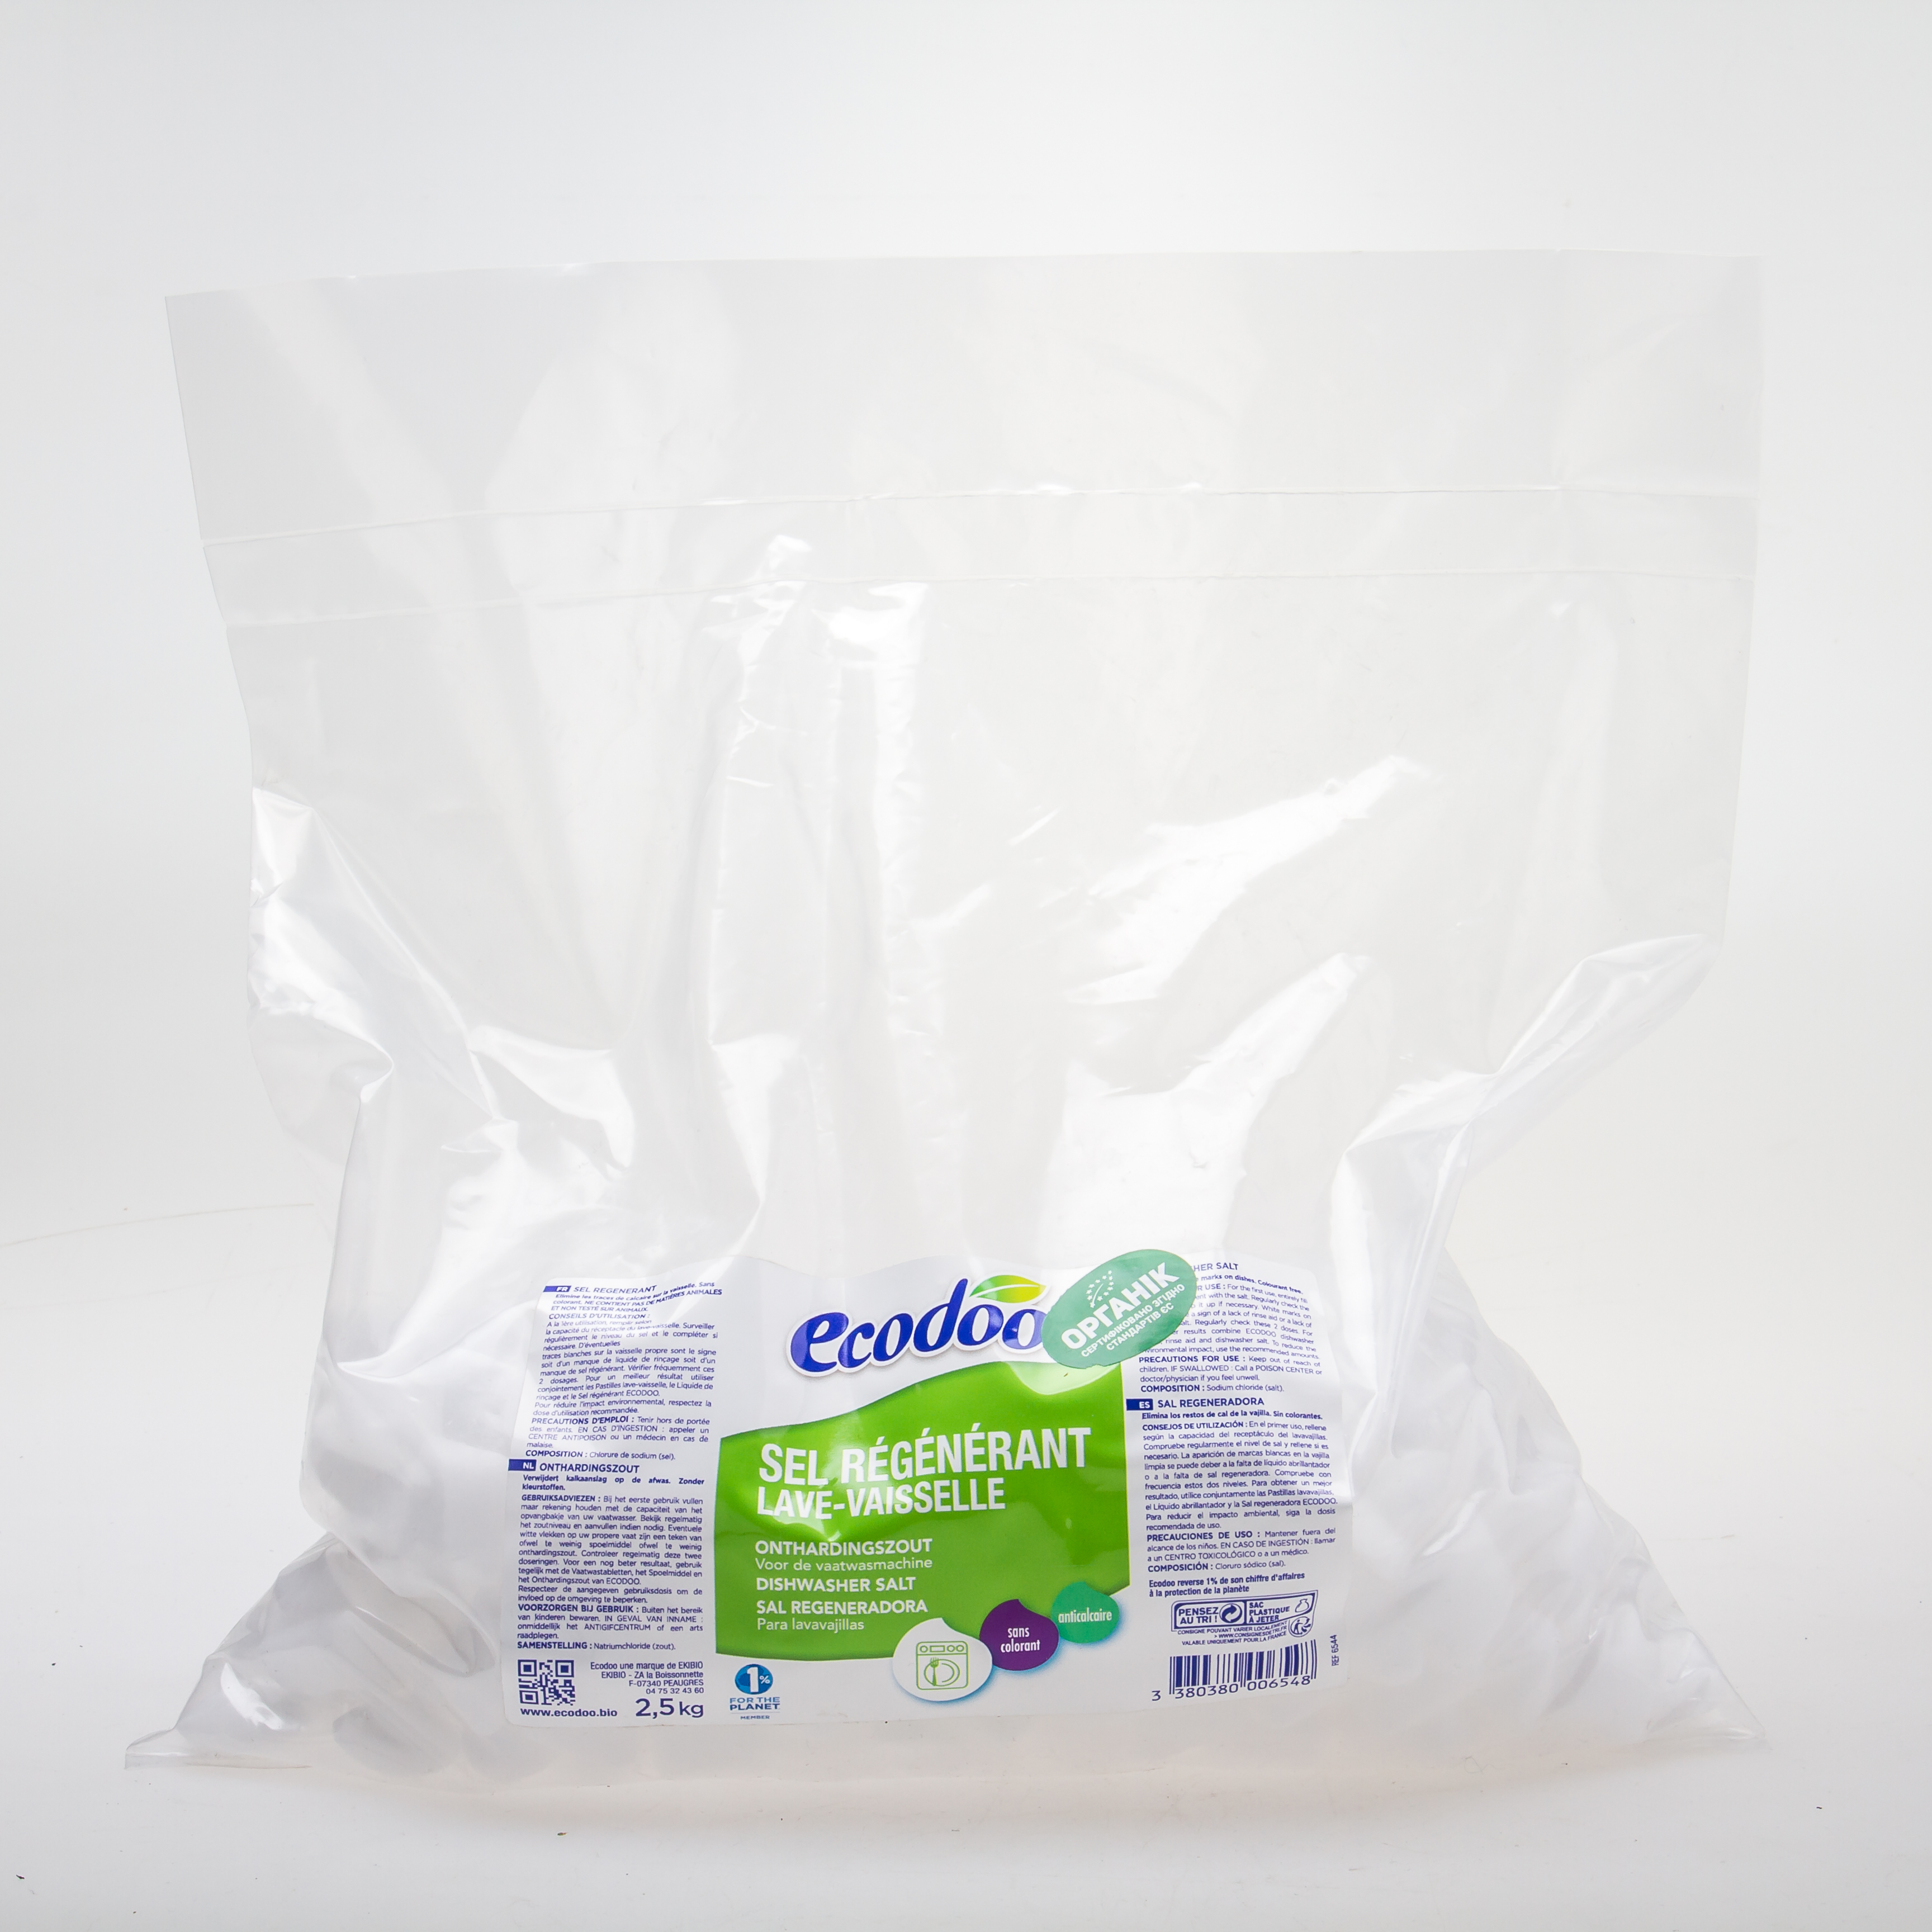 Ecodoo Органічна регенеруюча сіль для посудомийних машин, 2,5кг - купить в интернет-магазине Юнимед